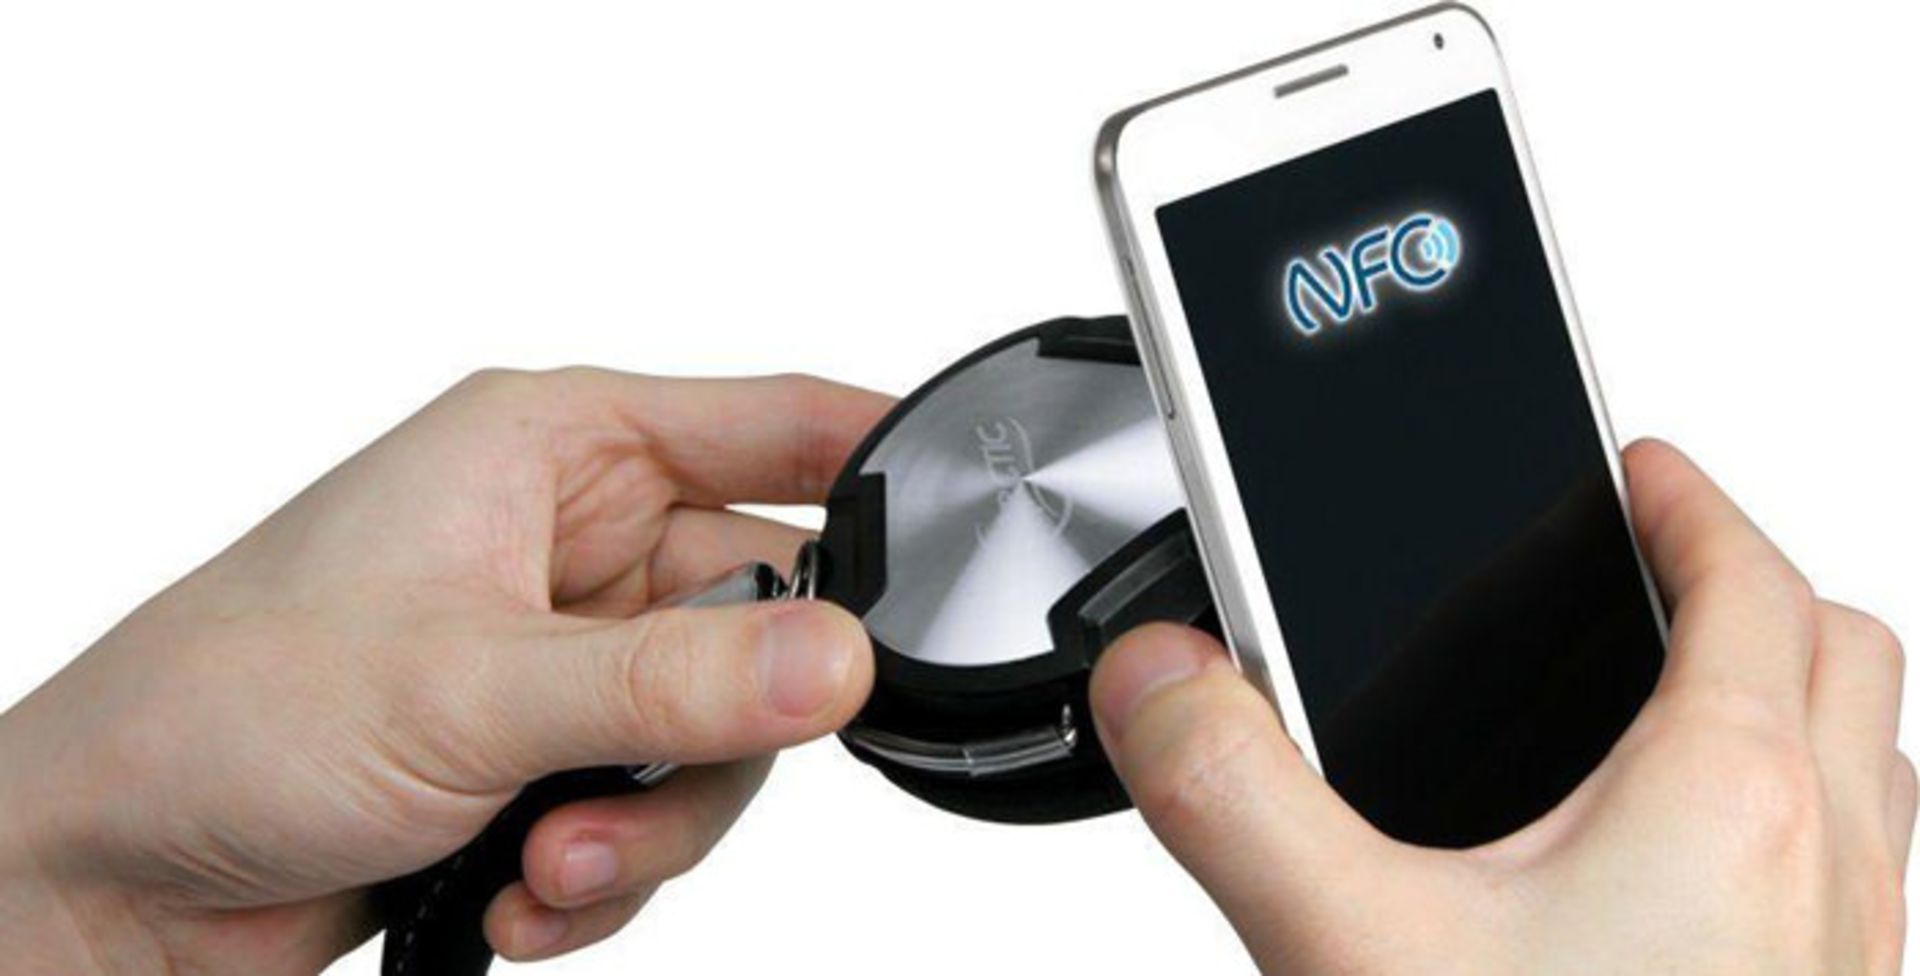 جفت کردن هدفون با گوشی از طریق NFC